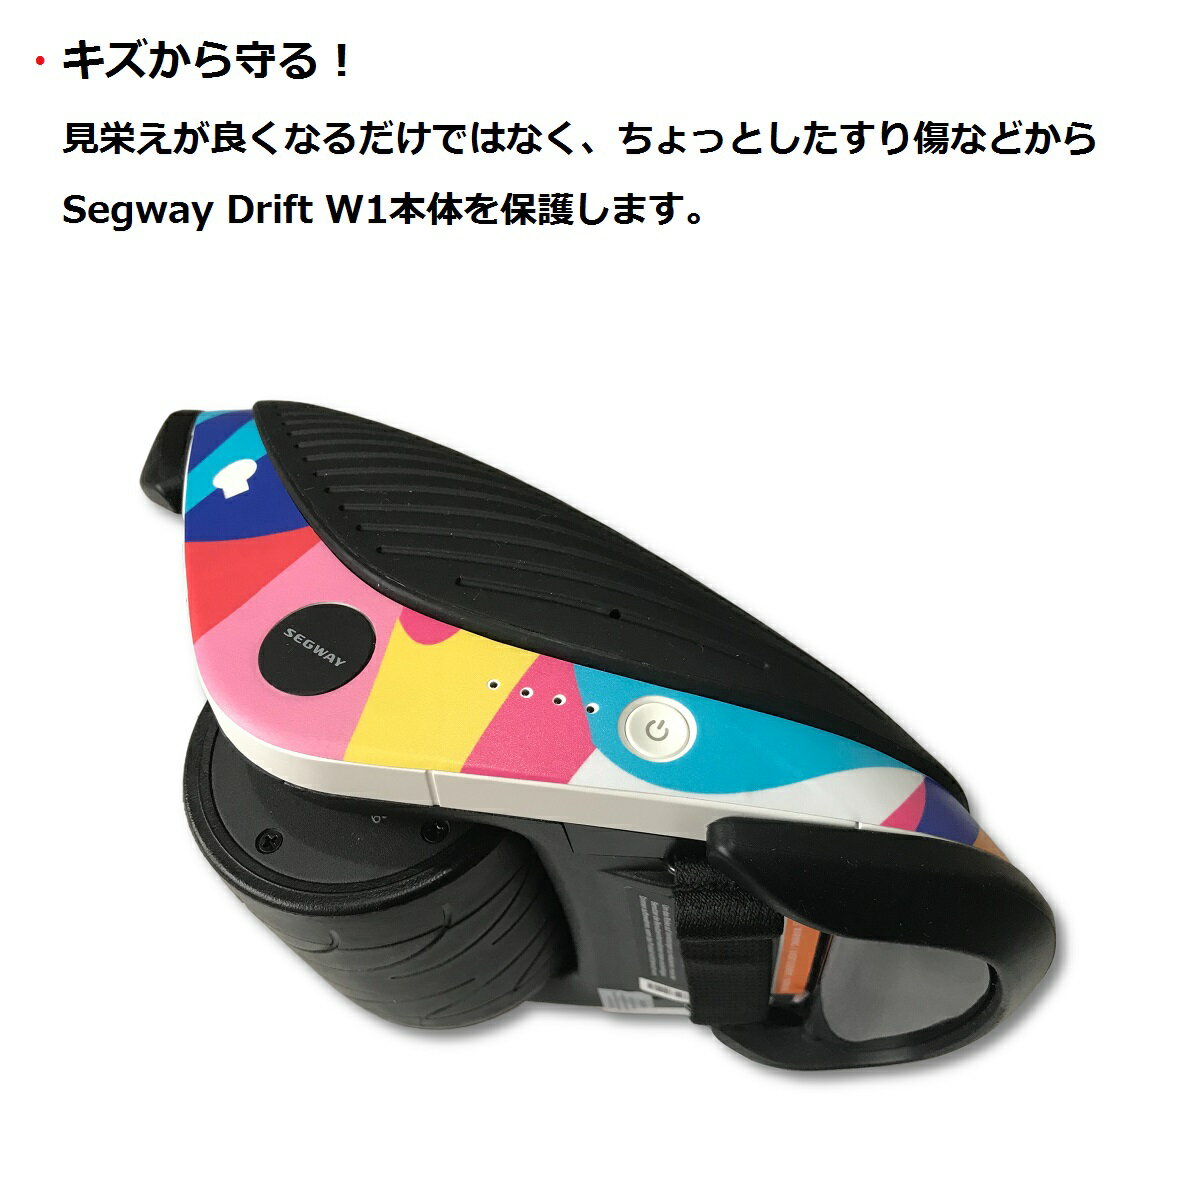 貼るだけでイメージ一新 日本限定 キズから守る Segway Drift W1 セグウェイ ドリフト 専用スキンシール 電動ローラースケート 保護 Ninebot バランススクーター ステッカー